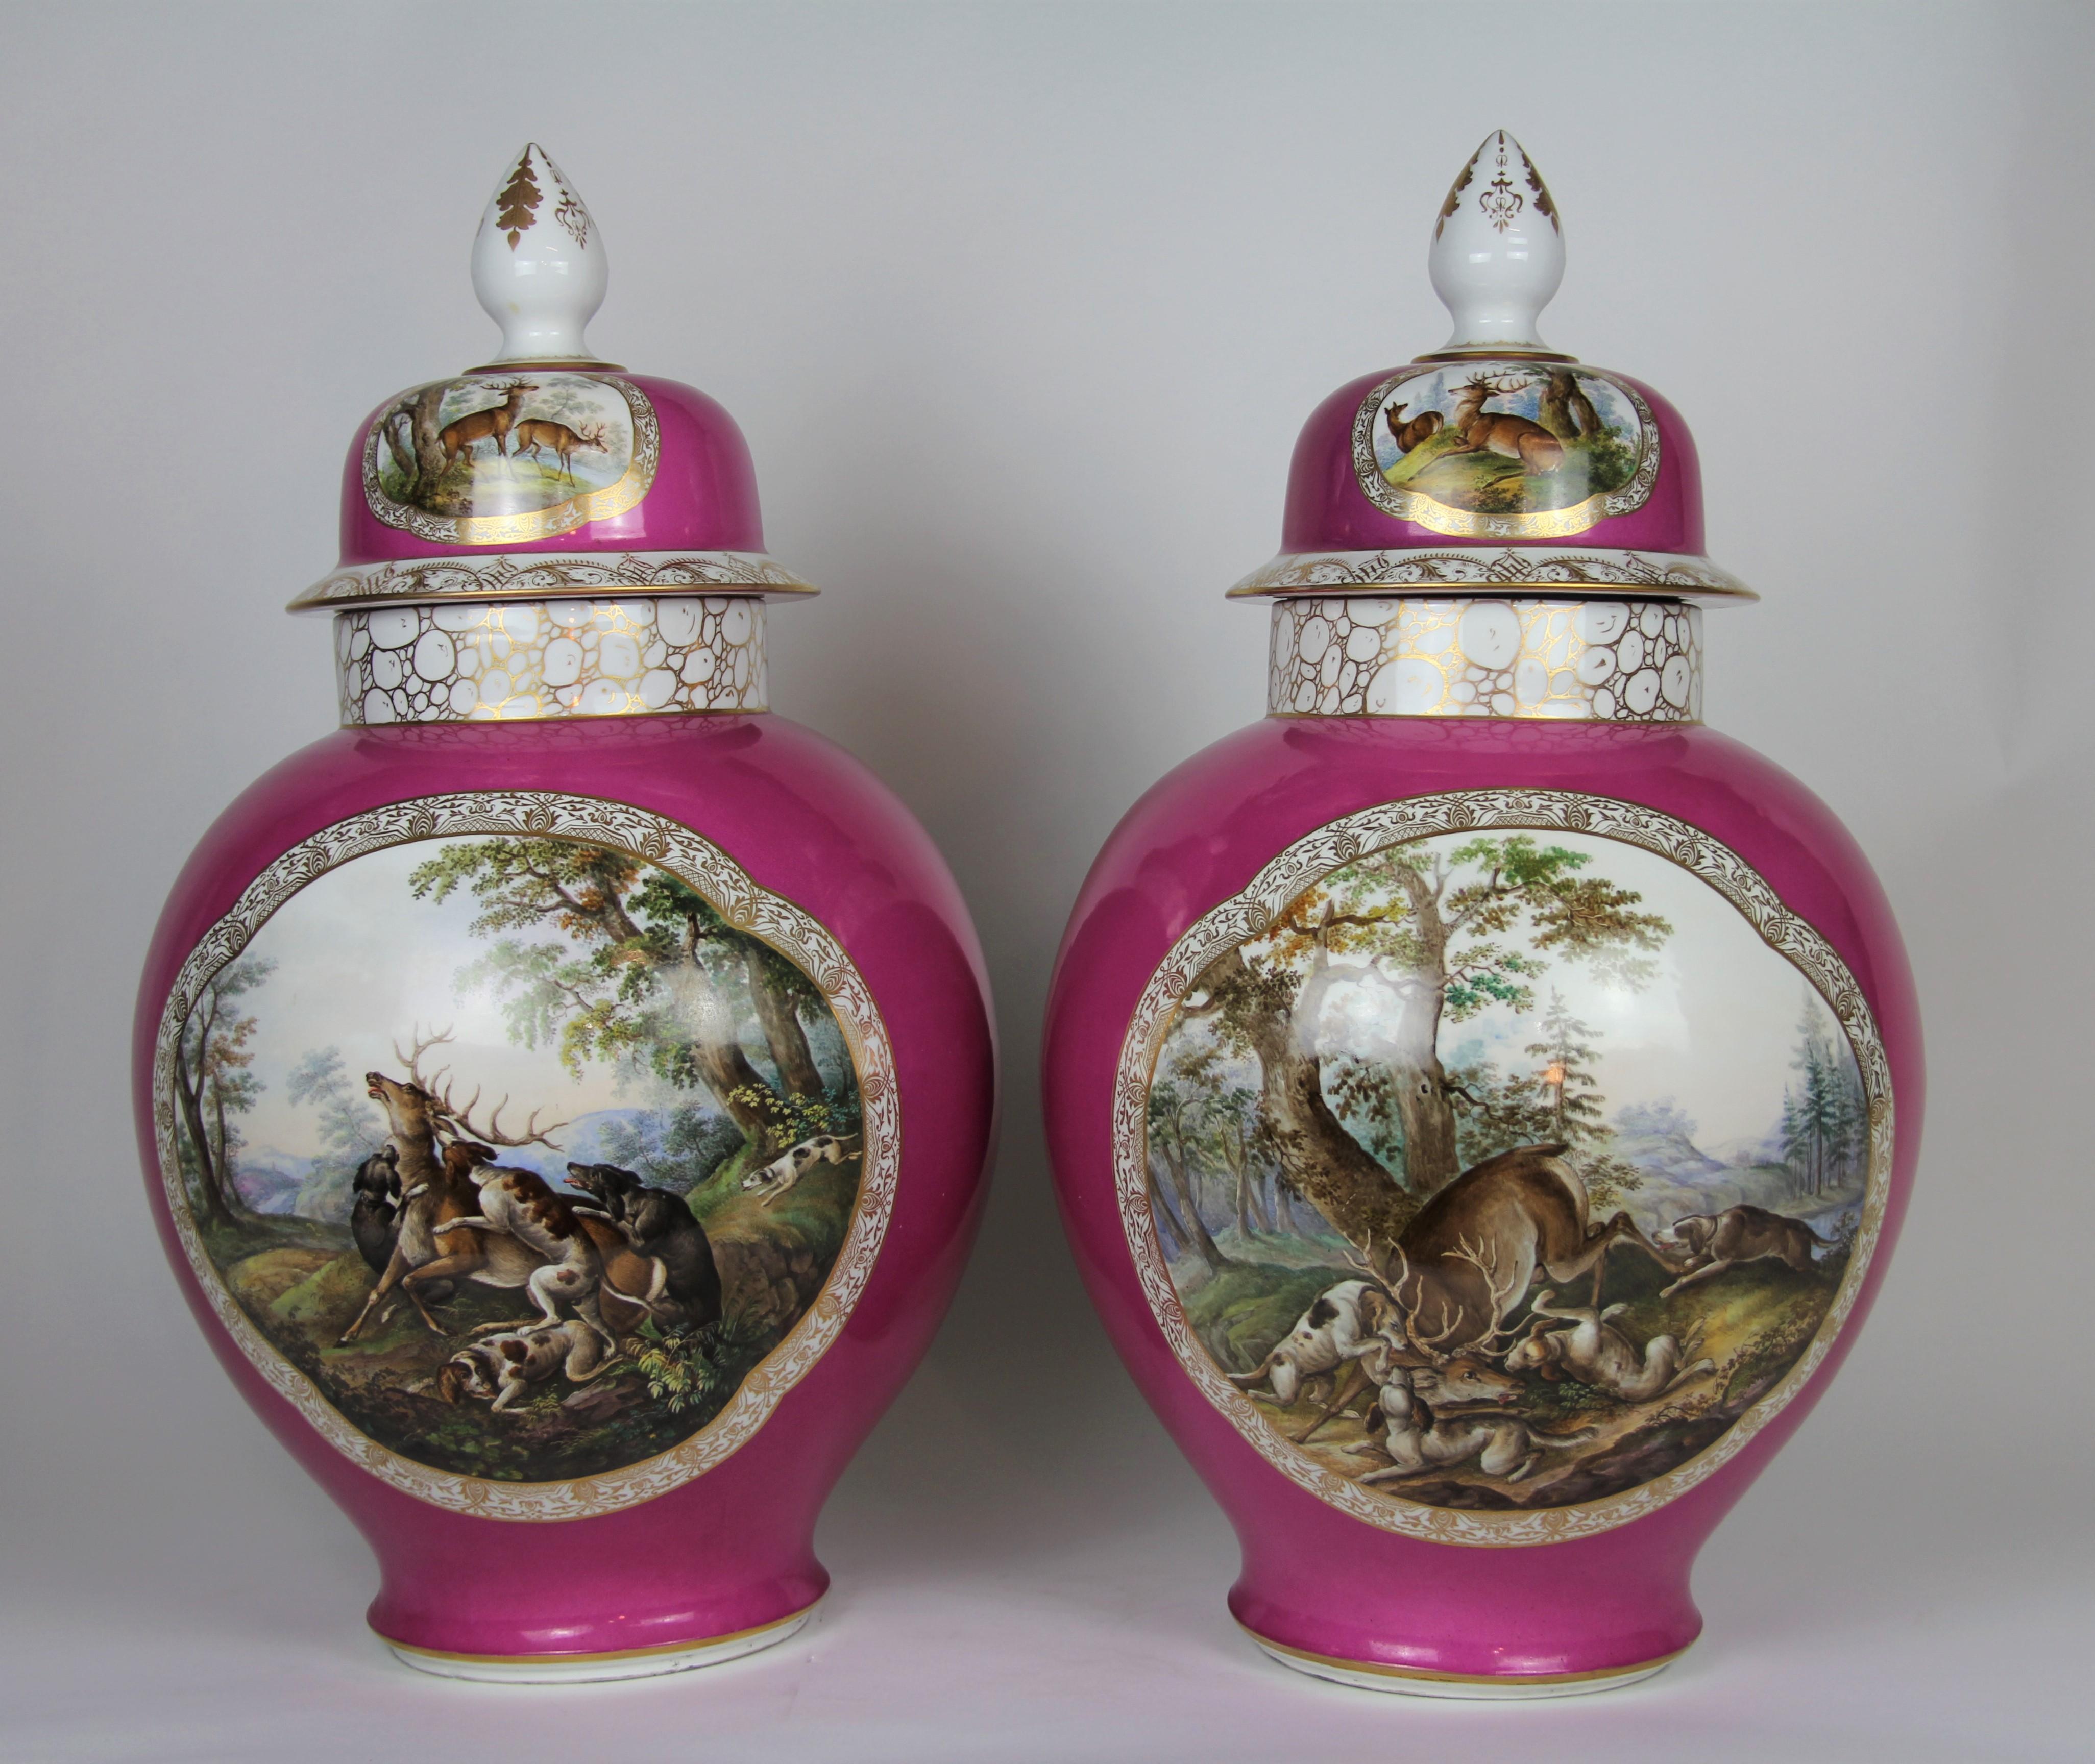 Ein monumentales Paar Vasen im Louis-XVI-Stil von Augustus Rex Meissen aus Porzellan mit rosa Grund und Jagdszene. Jedes ist wunderschön handbemalt mit Szenen von Jägern, Jagdhunden, Rehen und Bäumen. Sie sind beide mit viel Liebe zum Detail gemalt